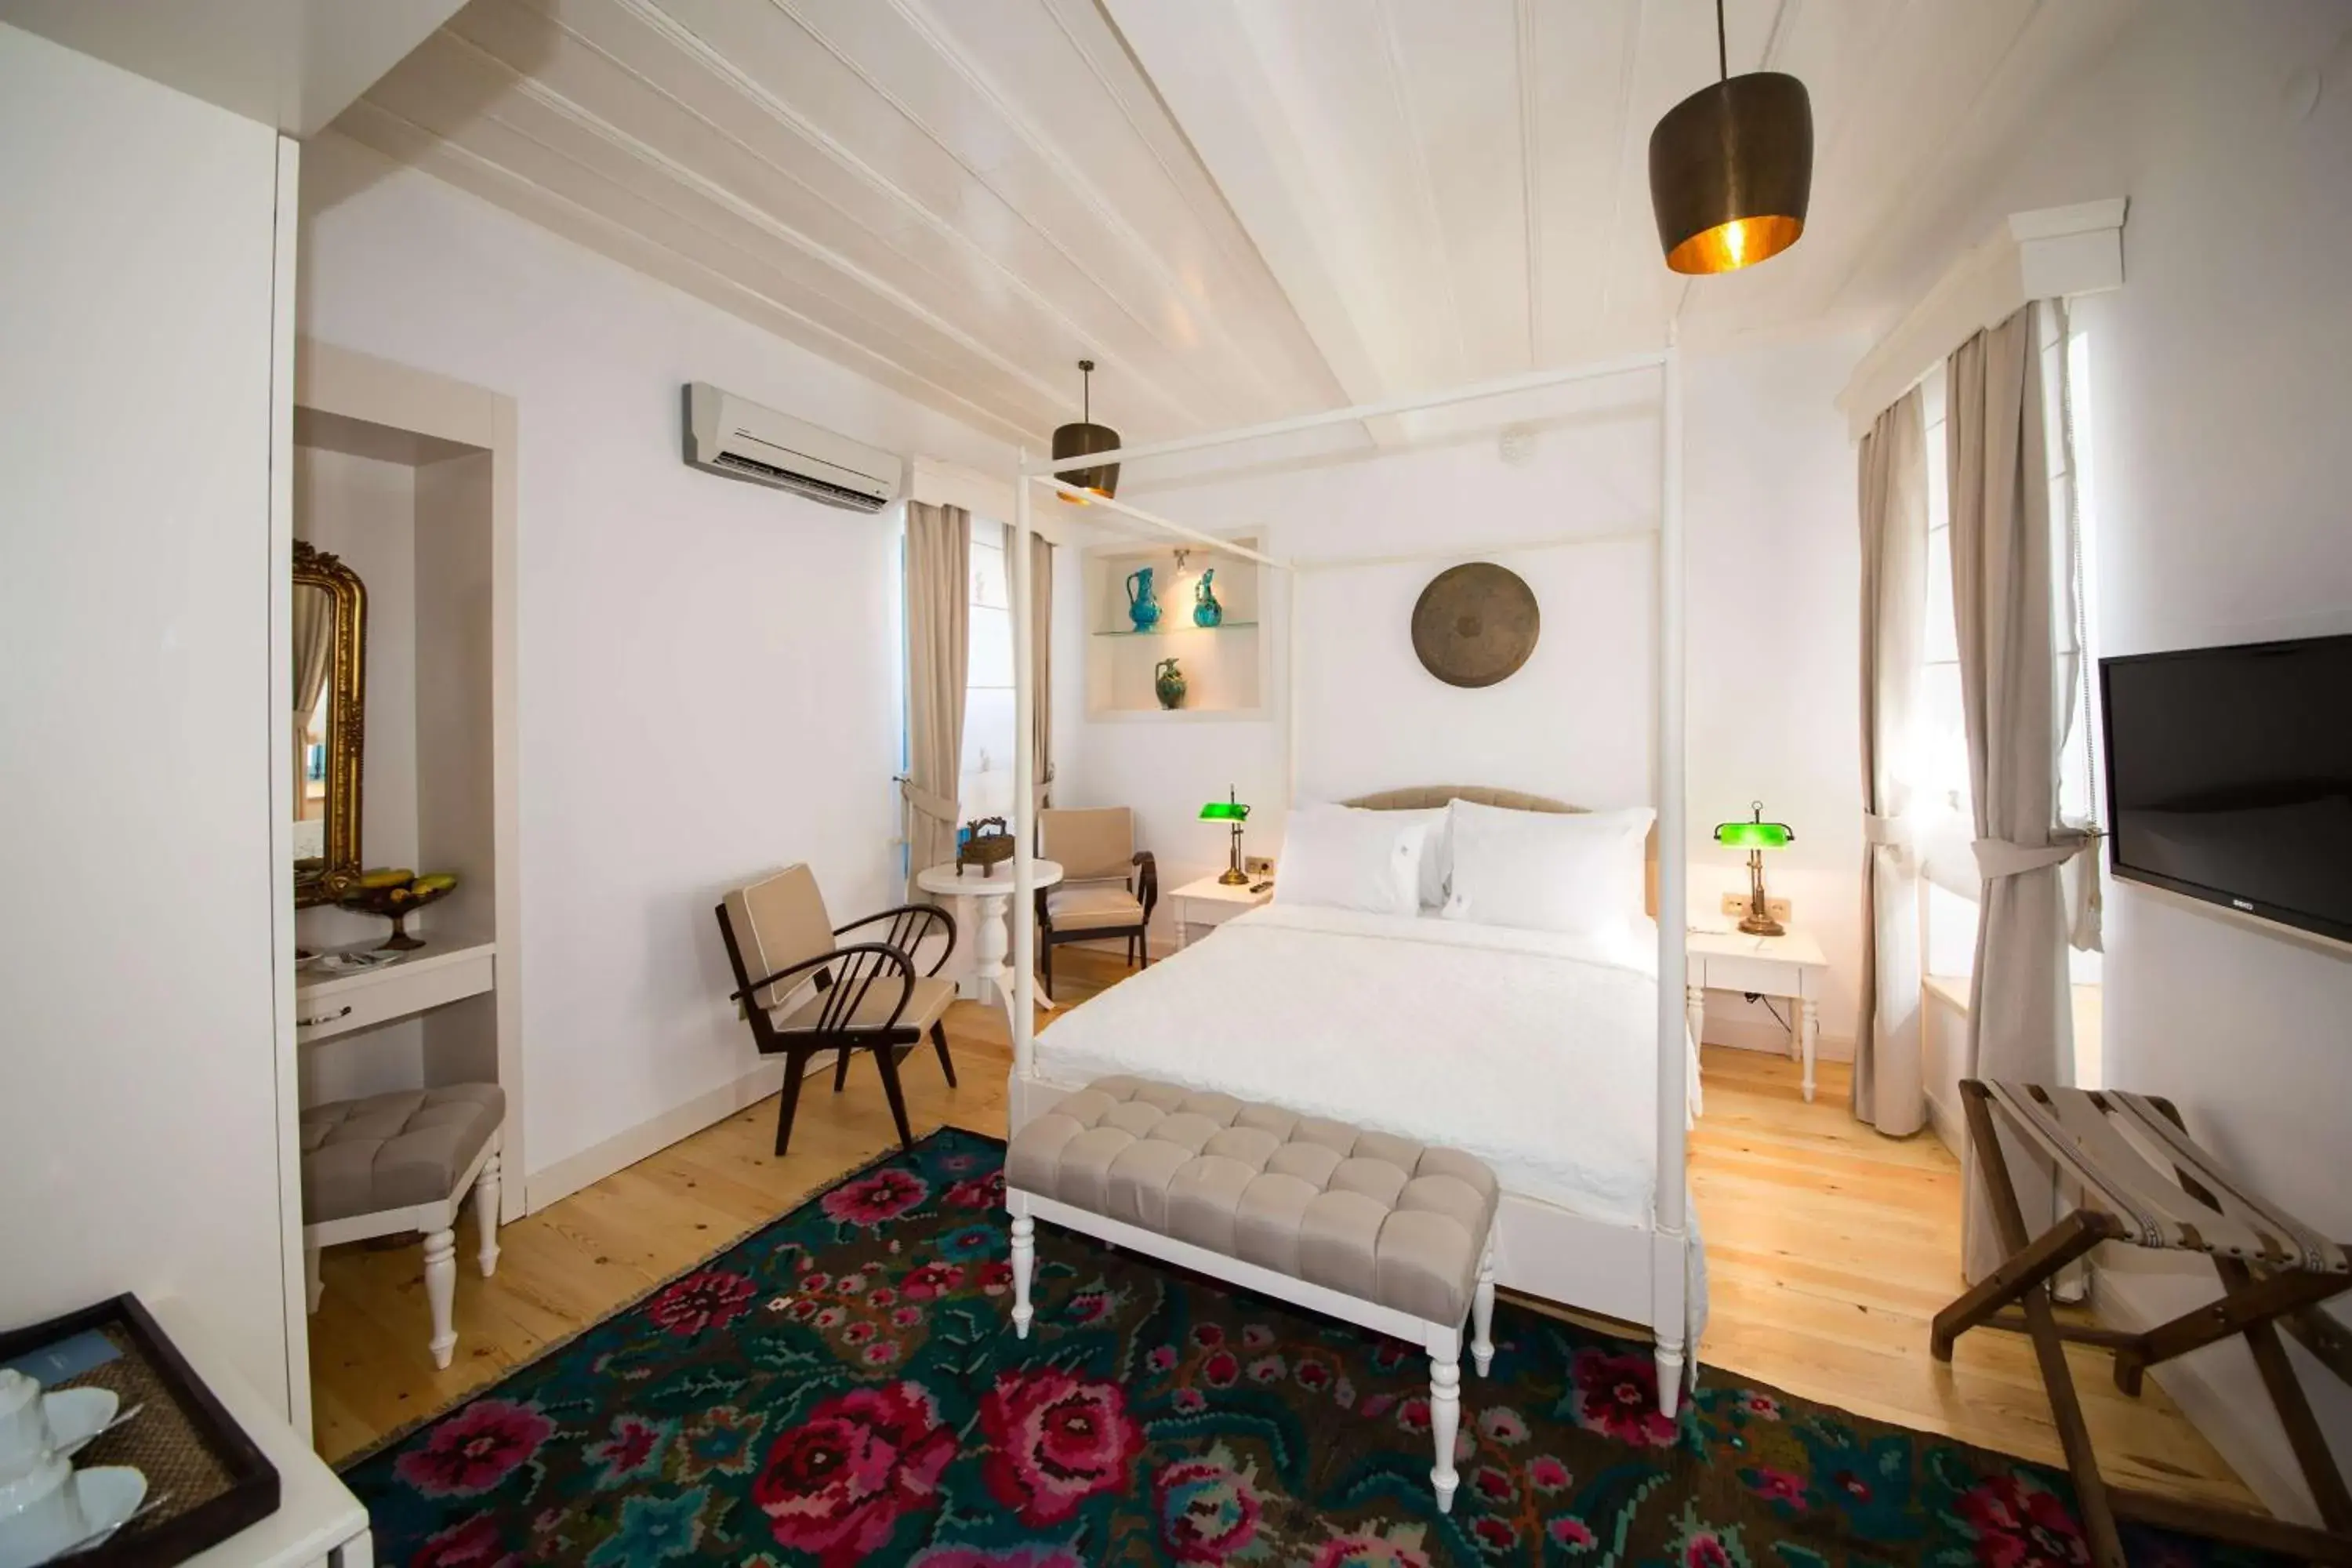 Bed in Viento Alacati Hotel